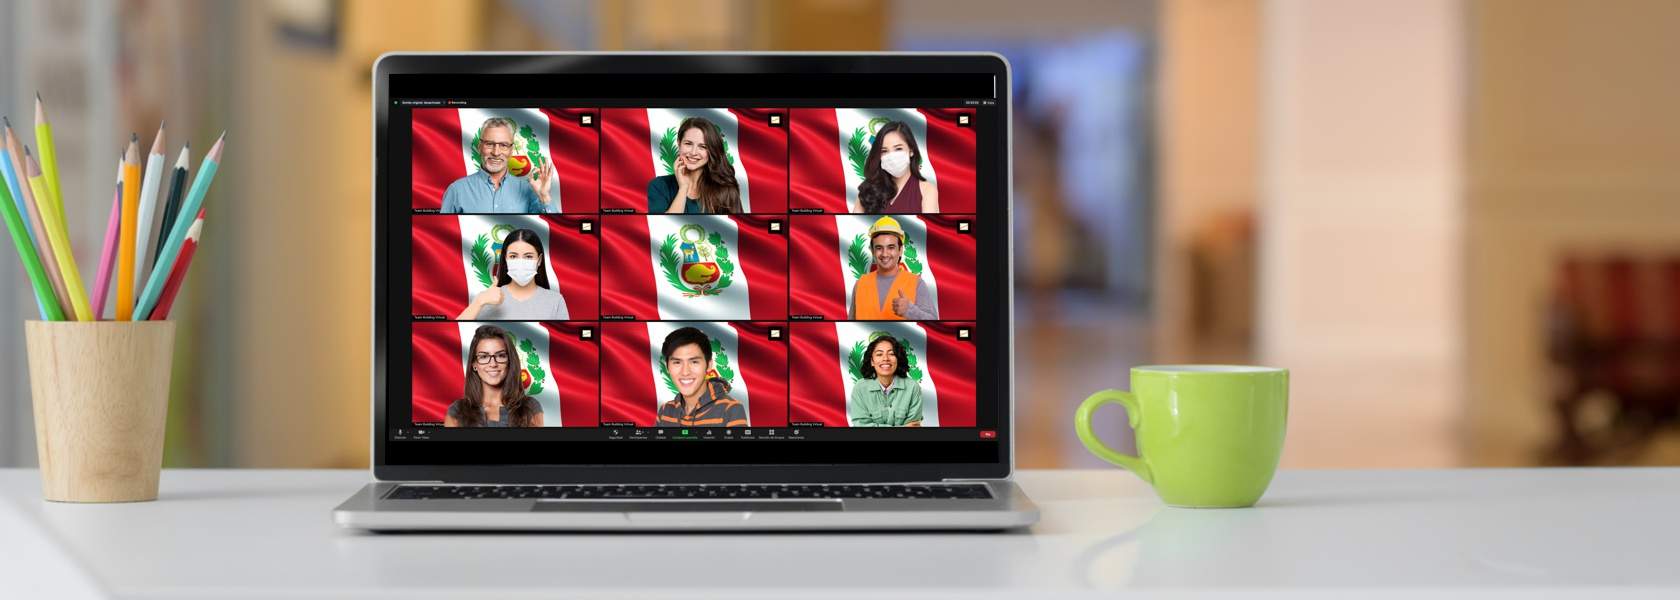 Perú Team Building, programas corporativos online y full-day para desarrollar las nuevas habilidades de tus equipos de trabajo remotos frente a los cambios